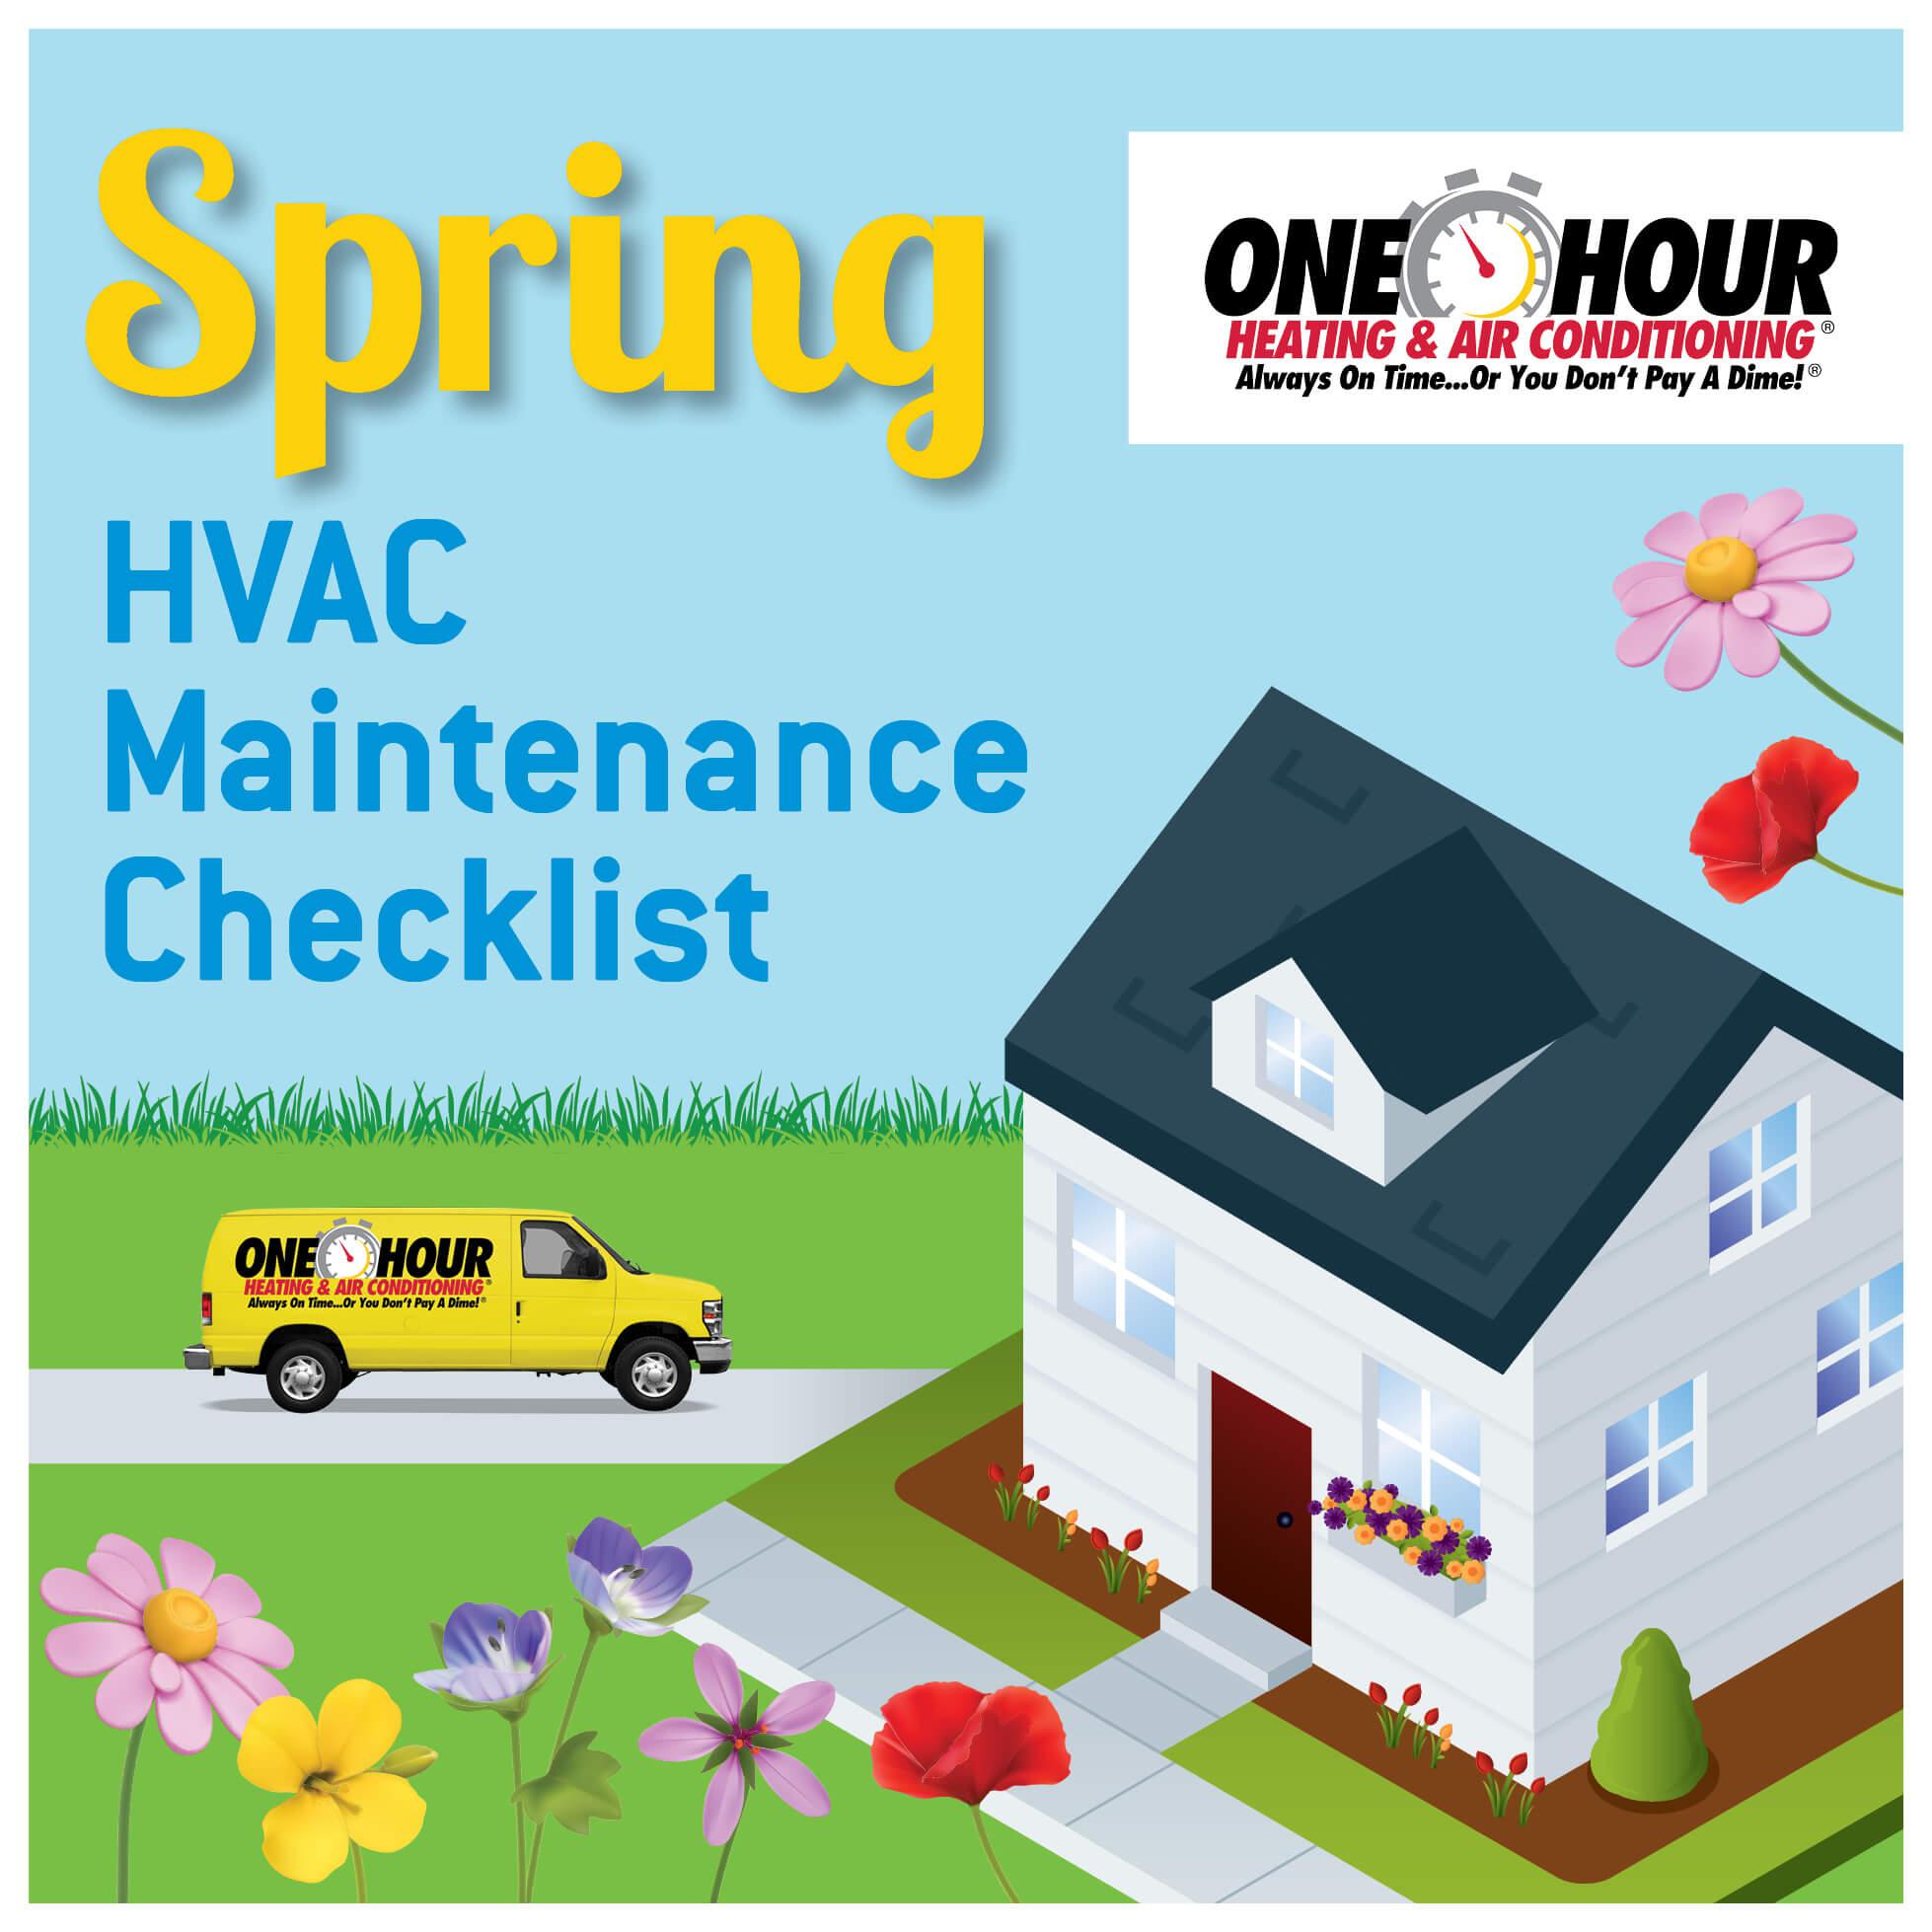 Spring Maintenance Checklist